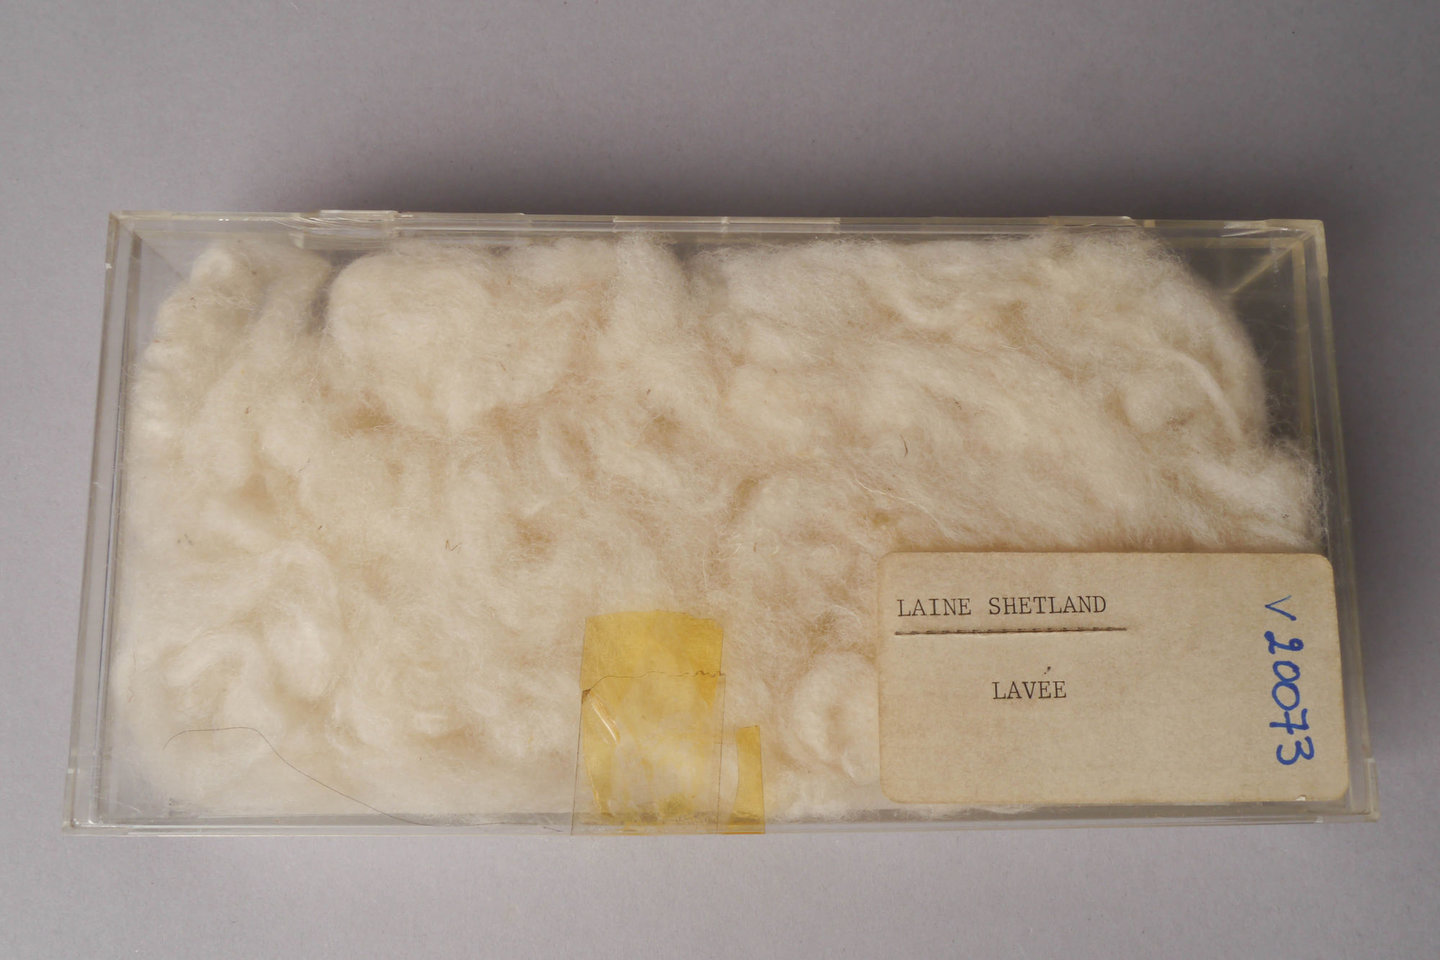 Staal van gewassen wol uit Shetland